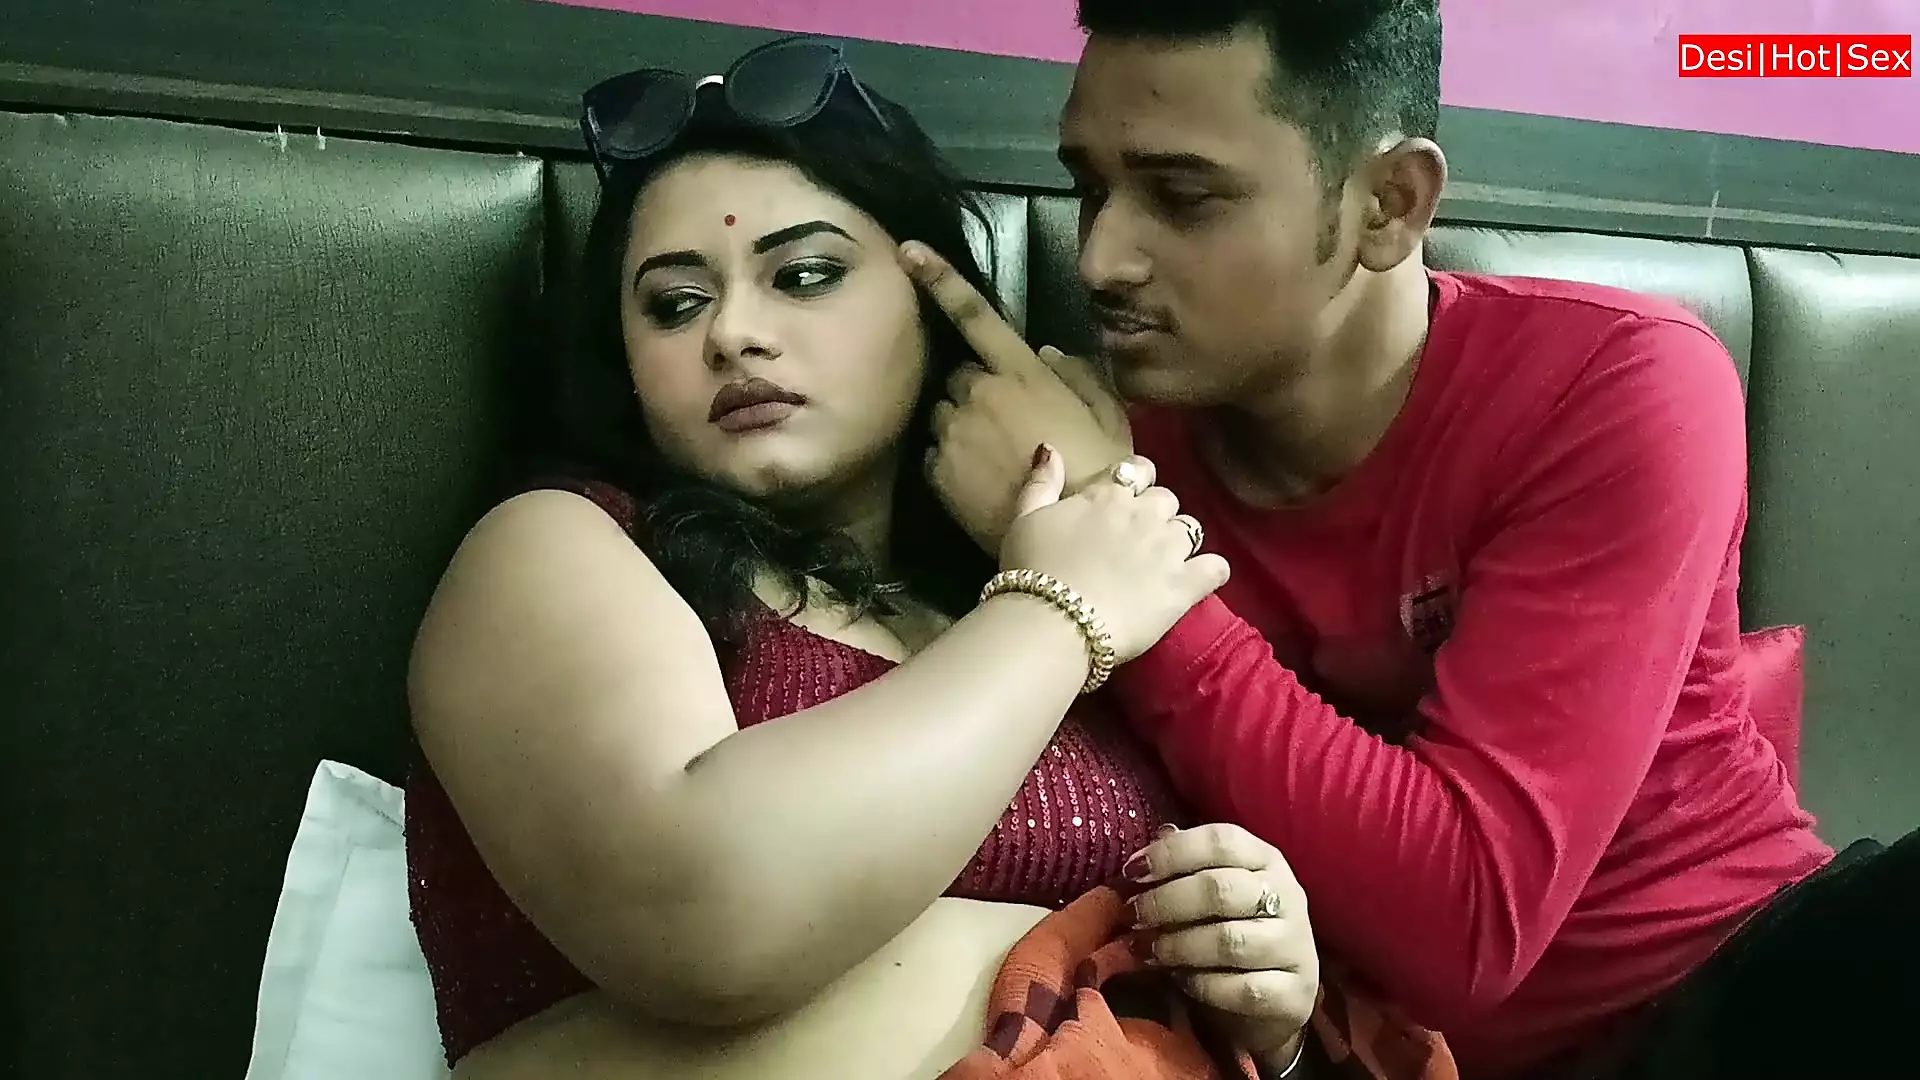 Desi Pure Hot Bhabhi Fucking with Neighbour Boy! Hindi Web photo photo